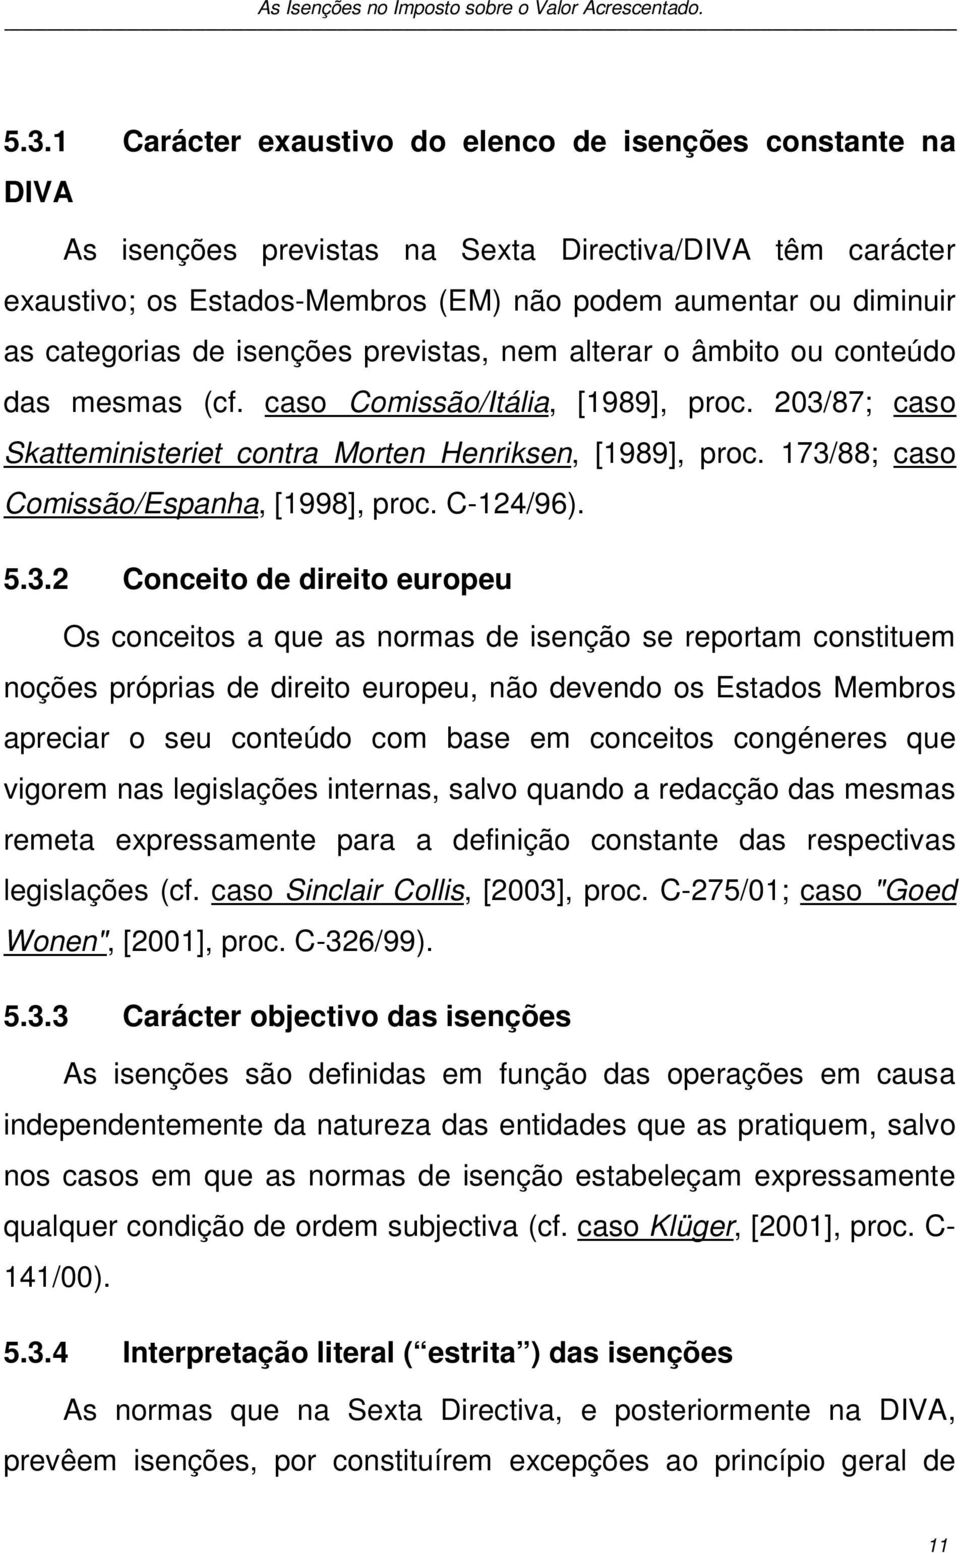 173/88; caso Comissão/Espanha, [1998], proc. C-124/96). 5.3.2 Conceito de direito europeu Os conceitos a que as normas de isenção se reportam constituem noções próprias de direito europeu, não